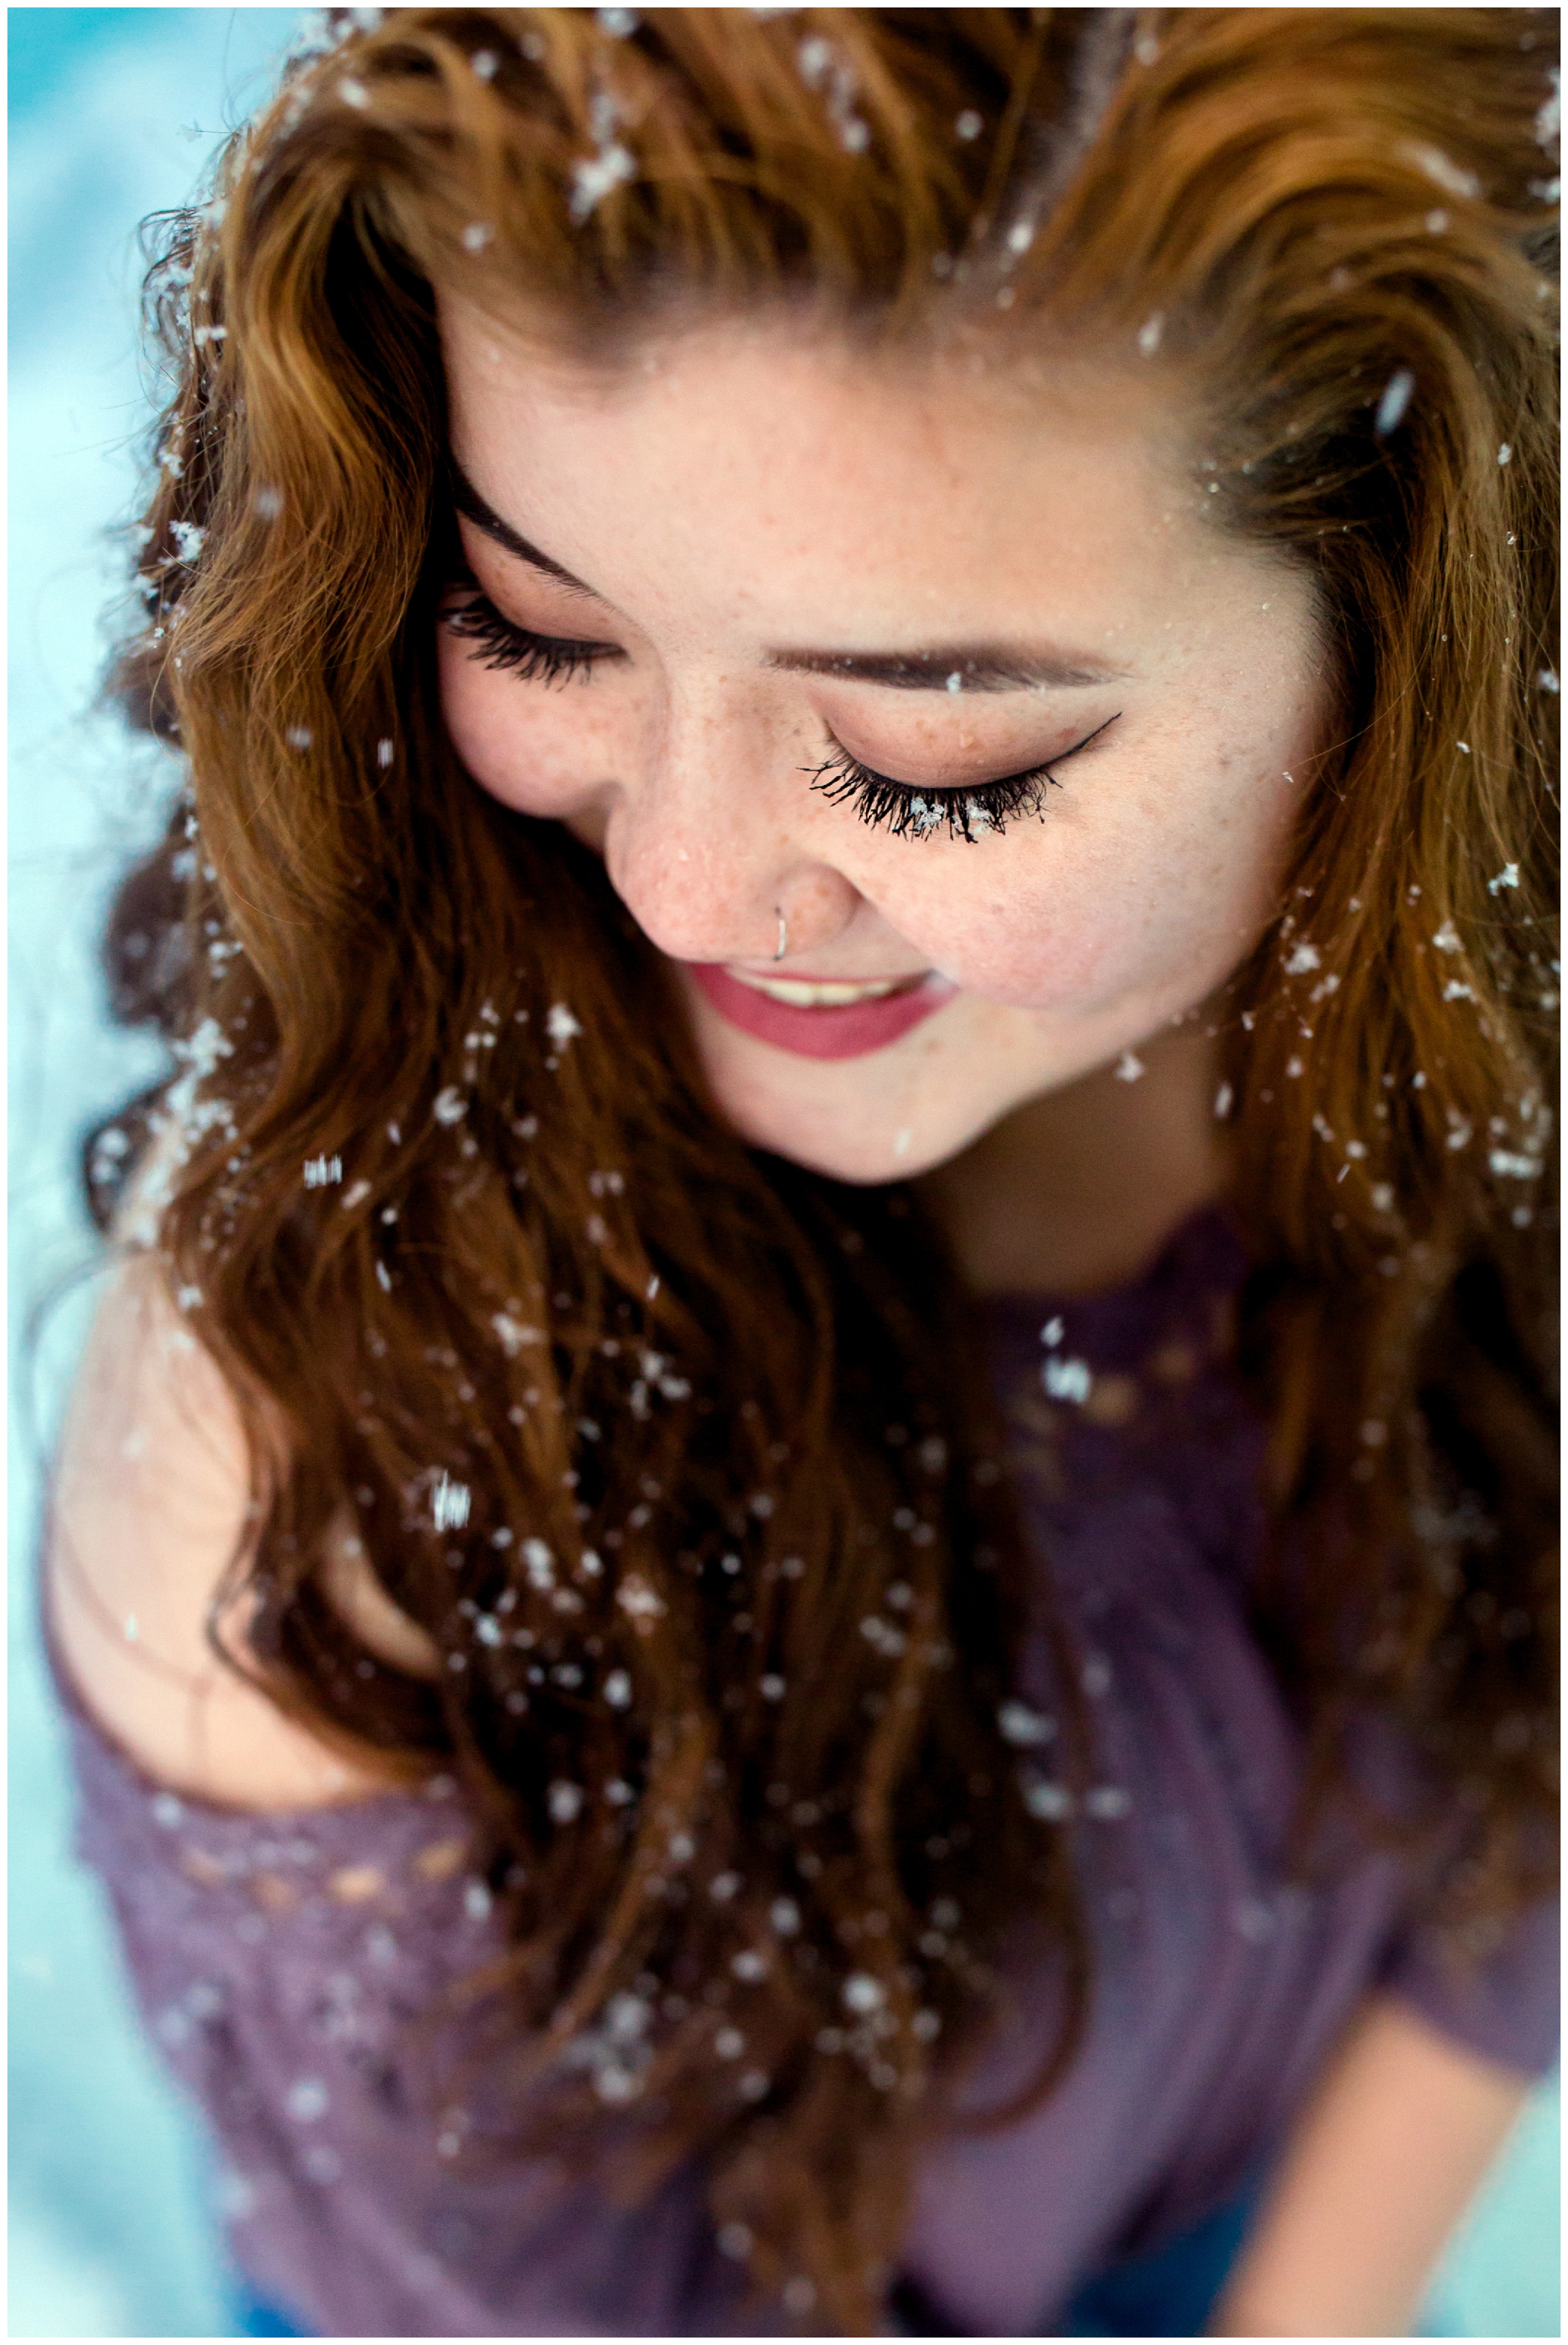 snowflakes on eyelashes during Colorado winter senior portraits 